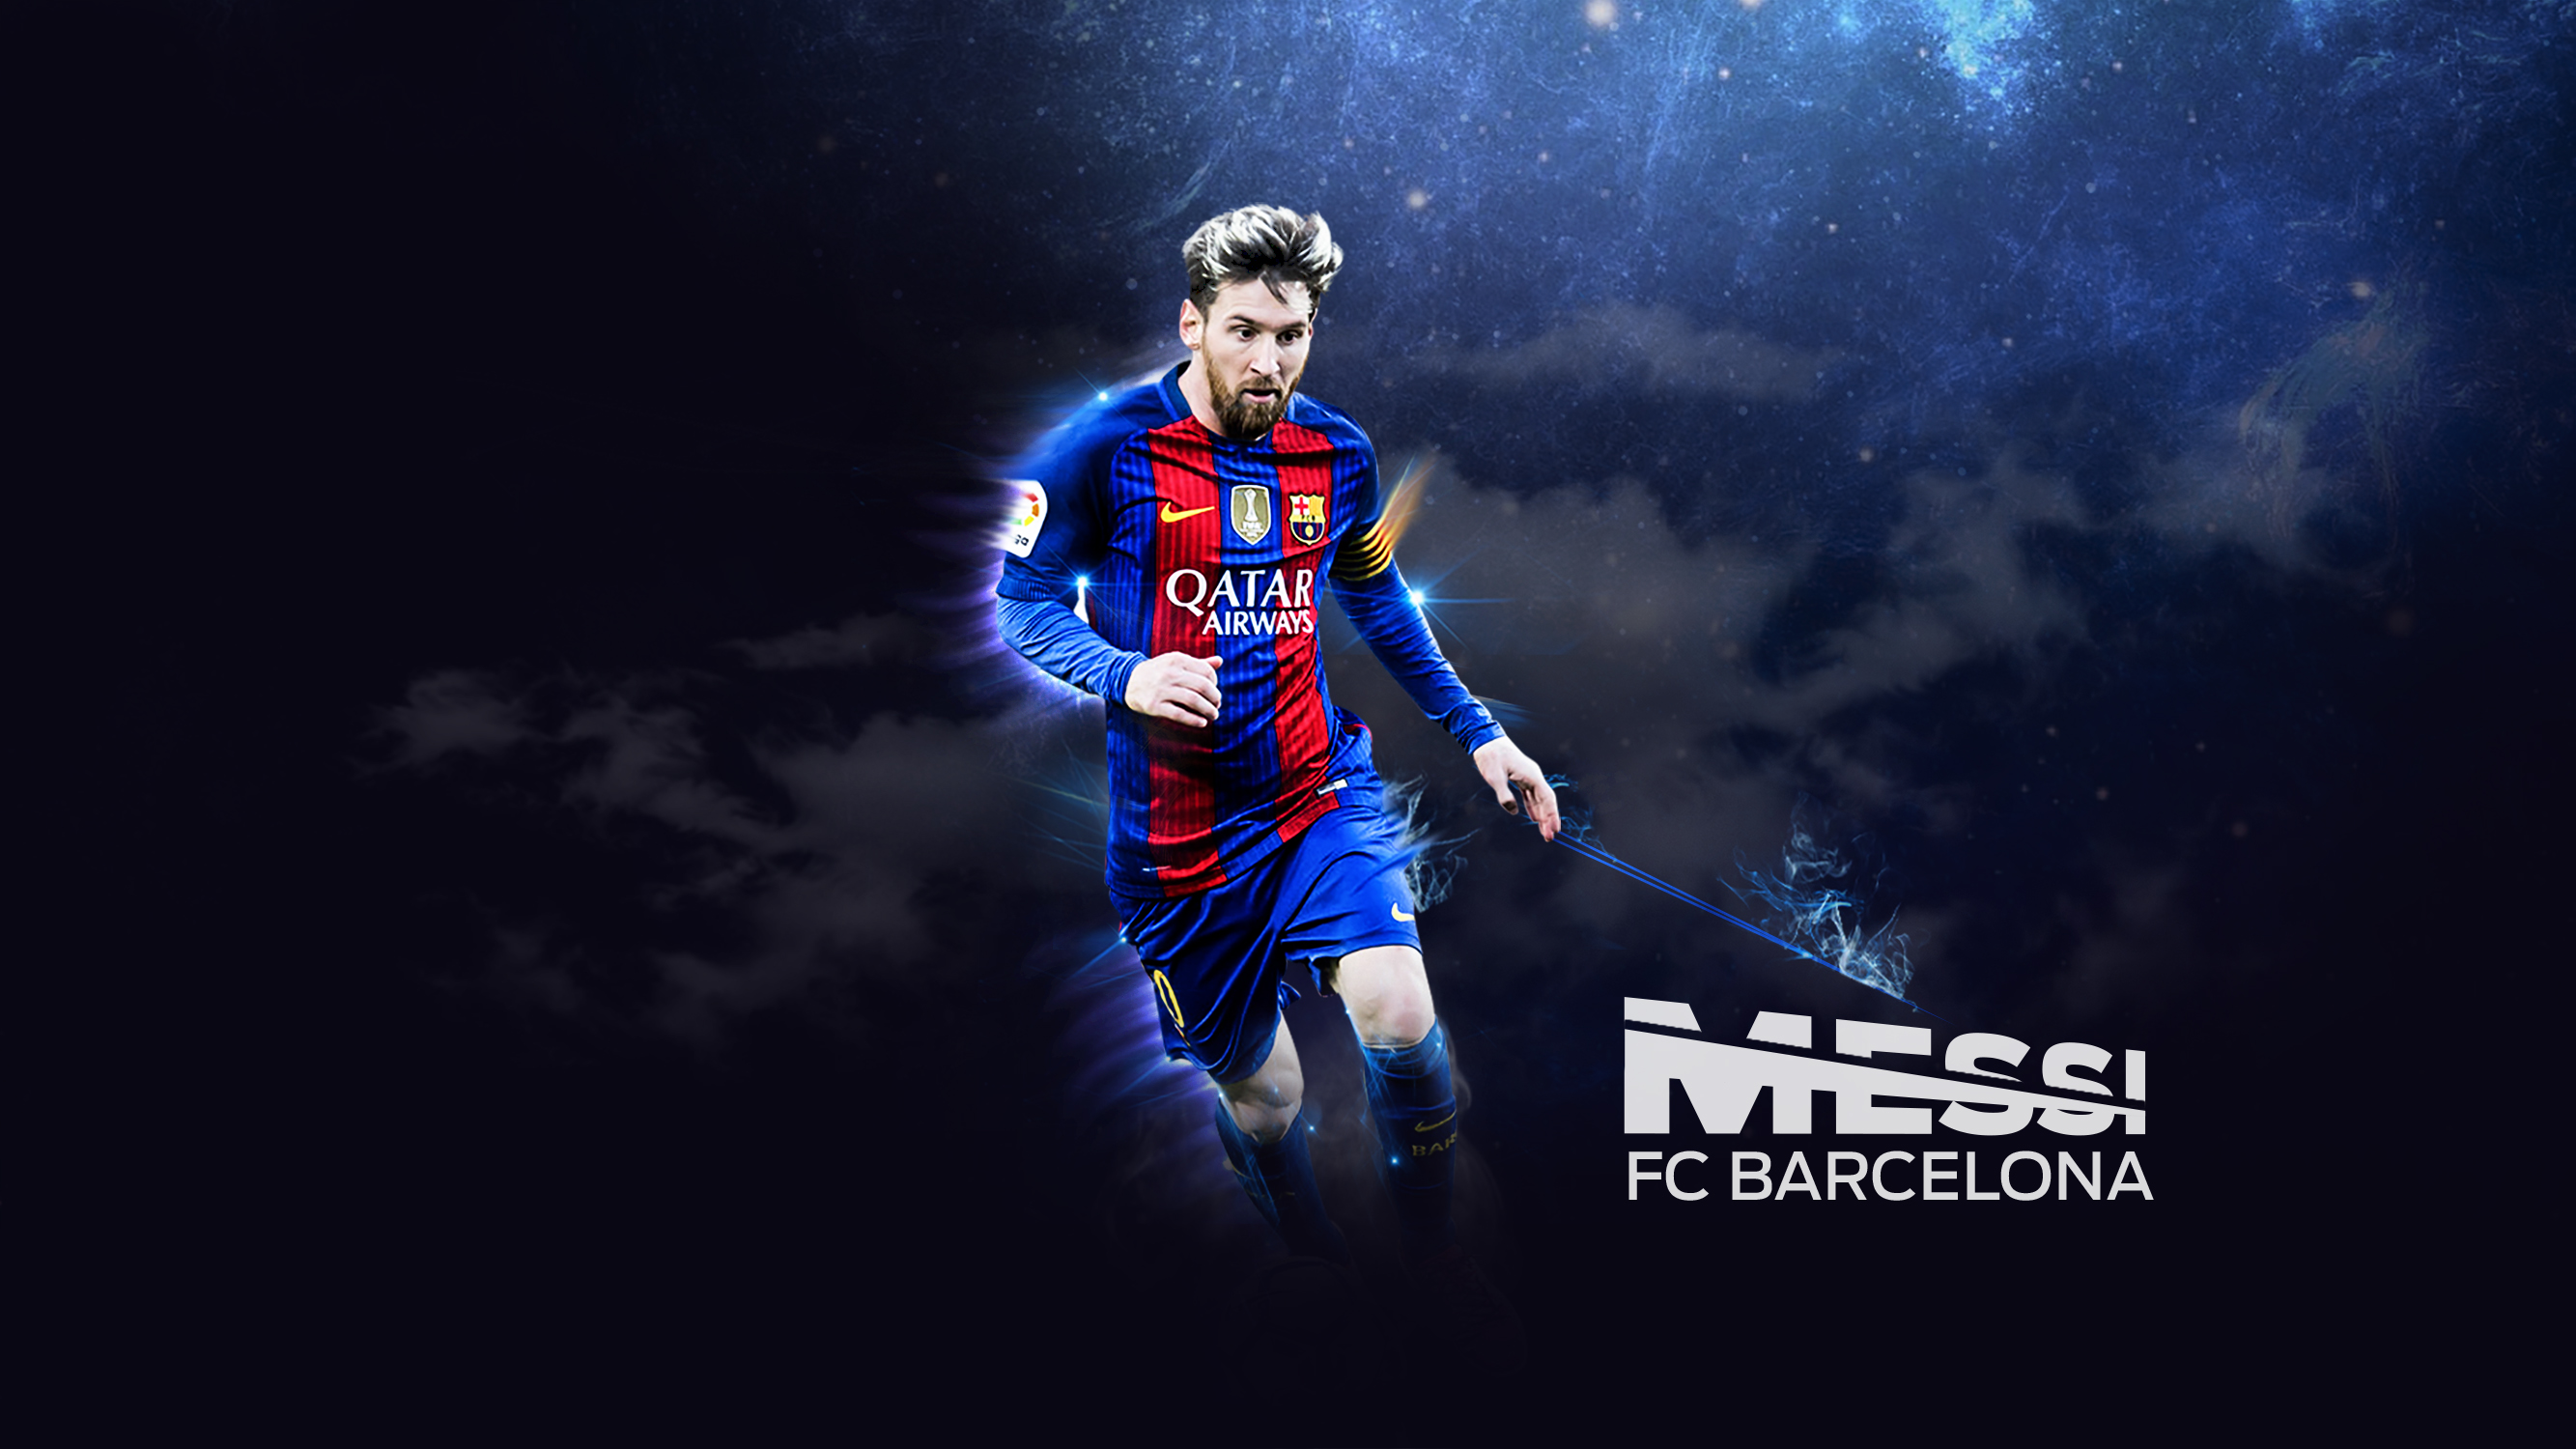 Lionel Messi FC Barcelona Footballer78673395 - Lionel Messi FC Barcelona Footballer - Messi, Lionel, footballer, Barcelona, 2017